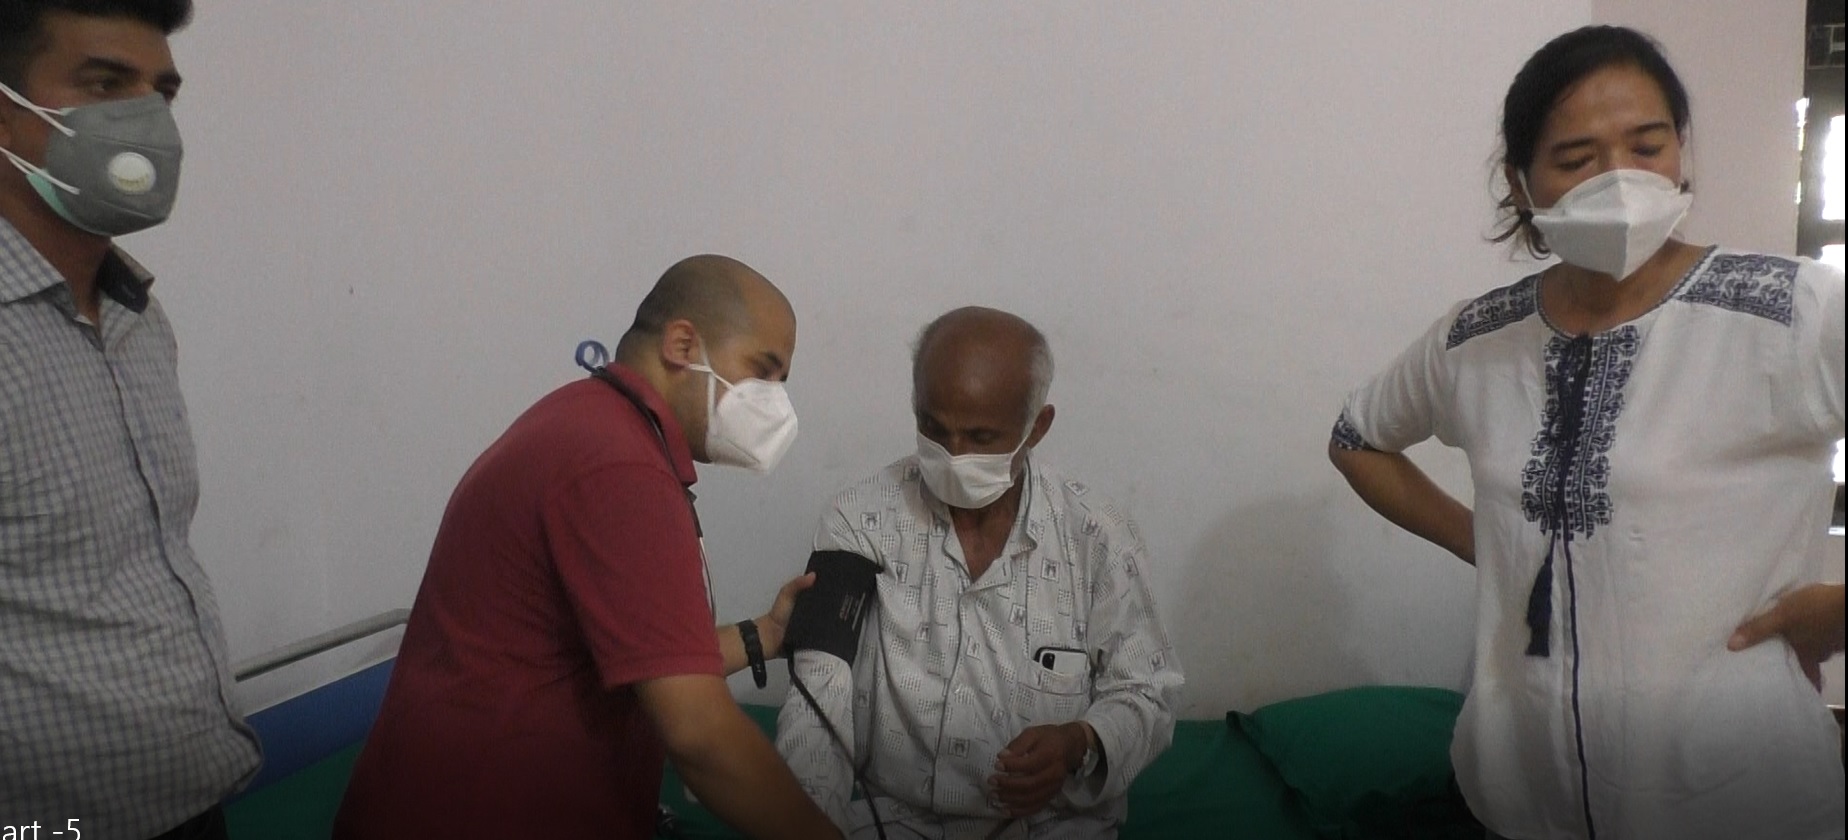 डा. गोविन्द केसी काठमाडौंमा, शिक्षण अस्पताल जान चाहे पनि ट्रमा सेन्टर लगियो (भिडियोसहित)